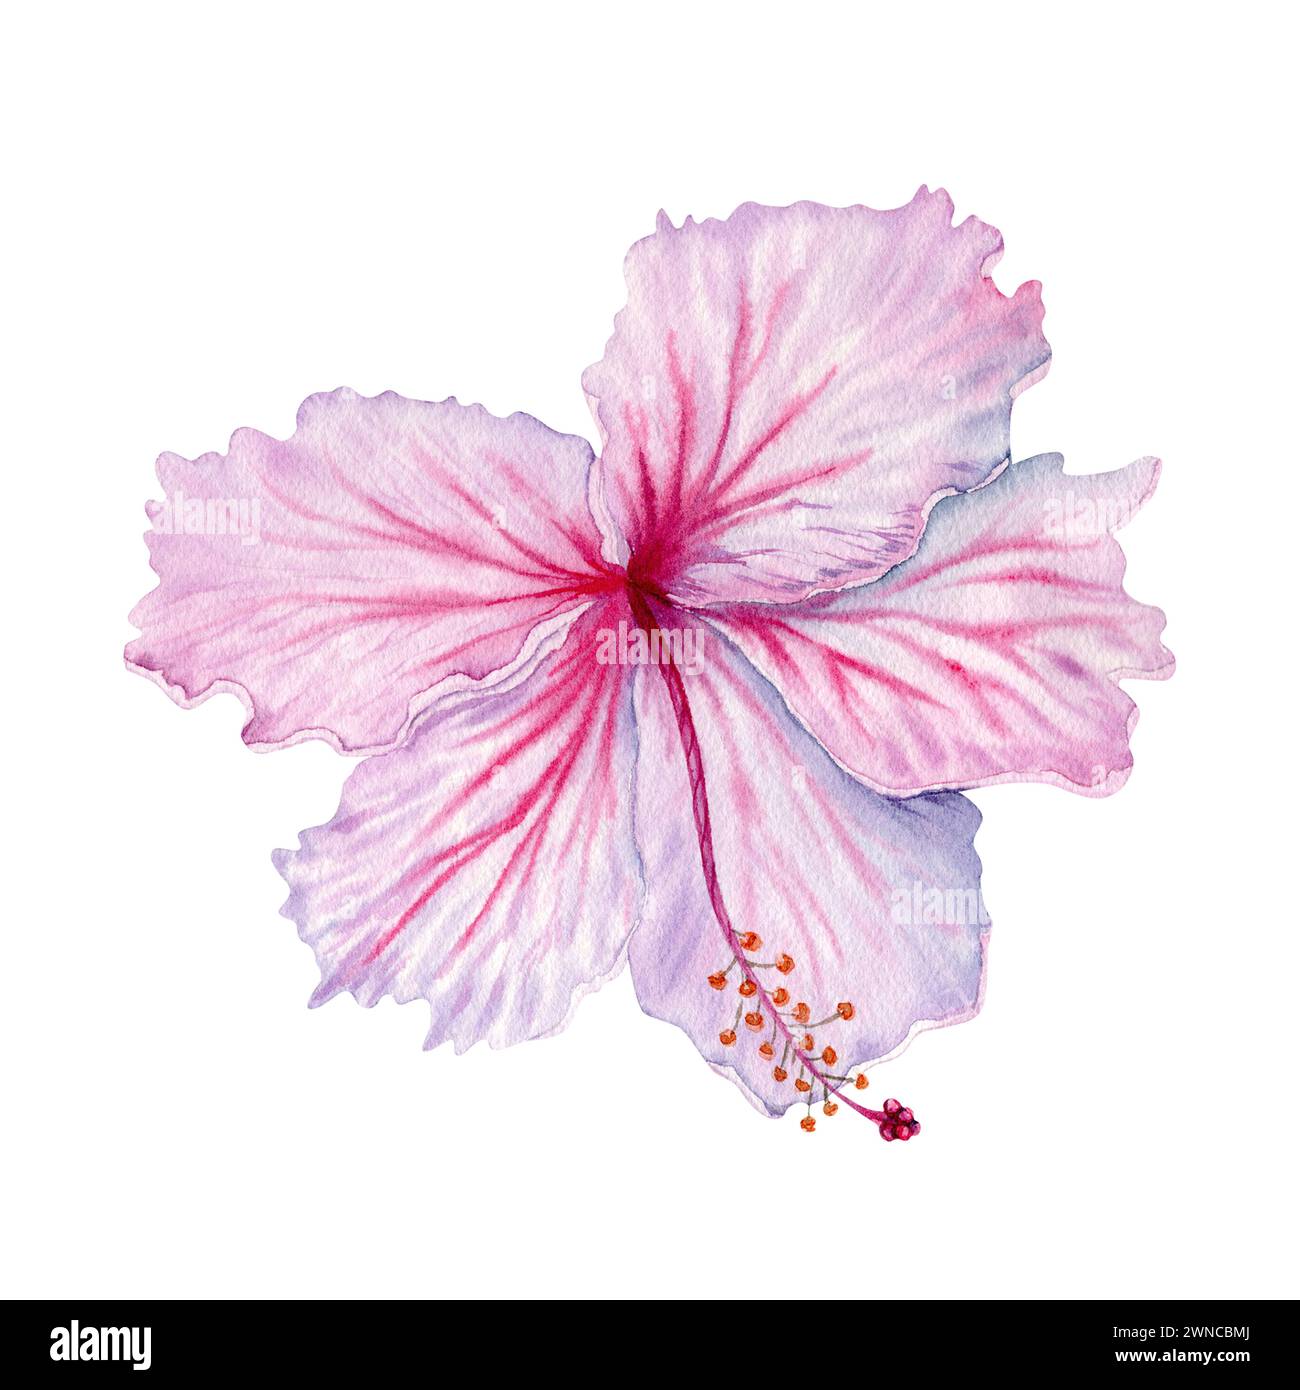 Aquarellrosa und weiße Hibiskusblüte. Handgemalte Blüte isoliert auf weißem Hintergrund. Realistisch zartes florales Element. Hibiskus-Tee, Sirup Stockfoto